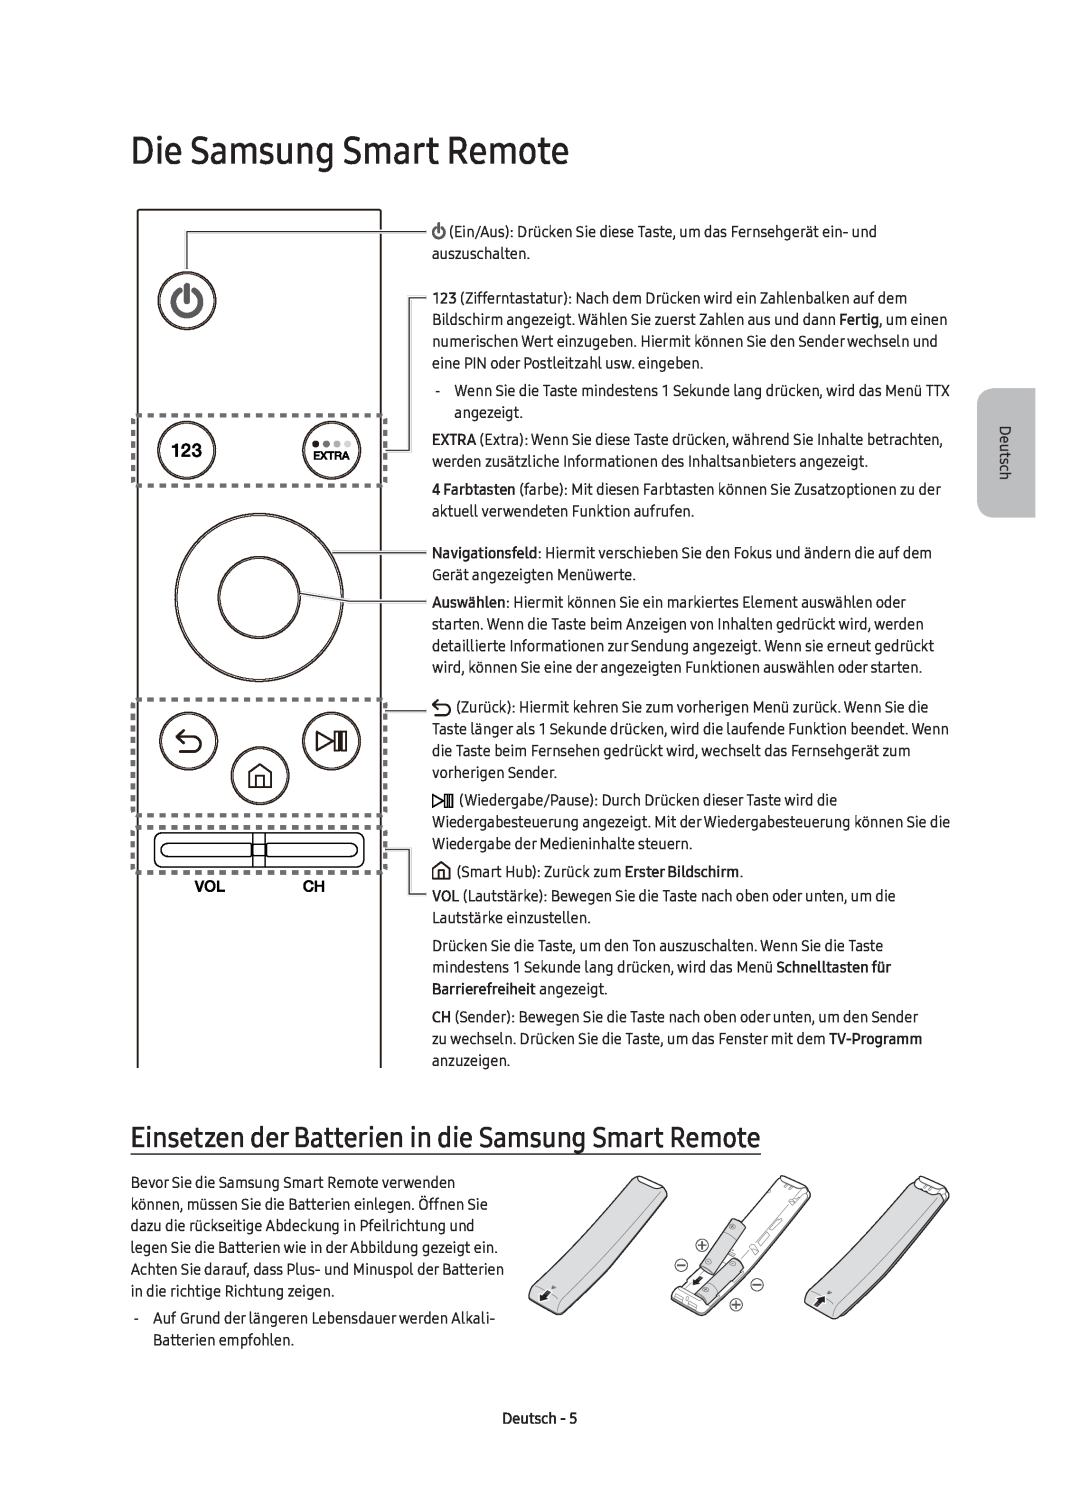 Samsung UE55KU6500UXZT manual Die Samsung Smart Remote, Einsetzen der Batterien in die Samsung Smart Remote, Deutsch 